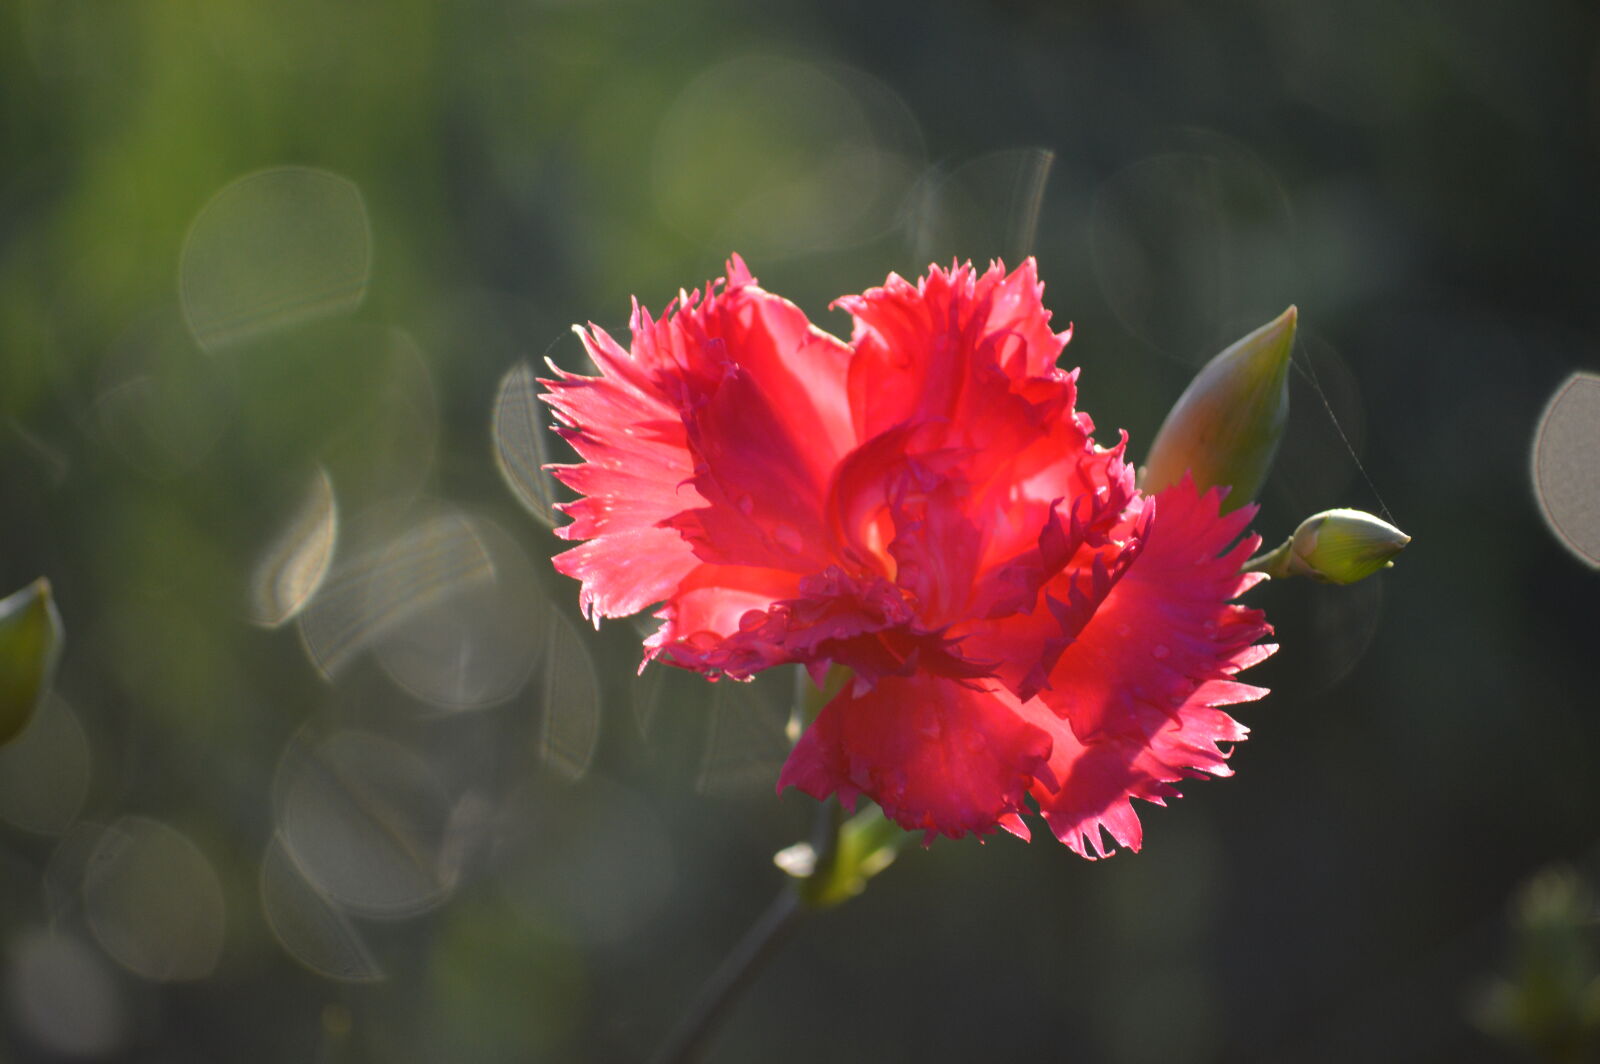 Nikon AF-S DX Nikkor 55-200mm F4-5.6G VR sample photo. Beautiful, flowers, carnation, pink photography